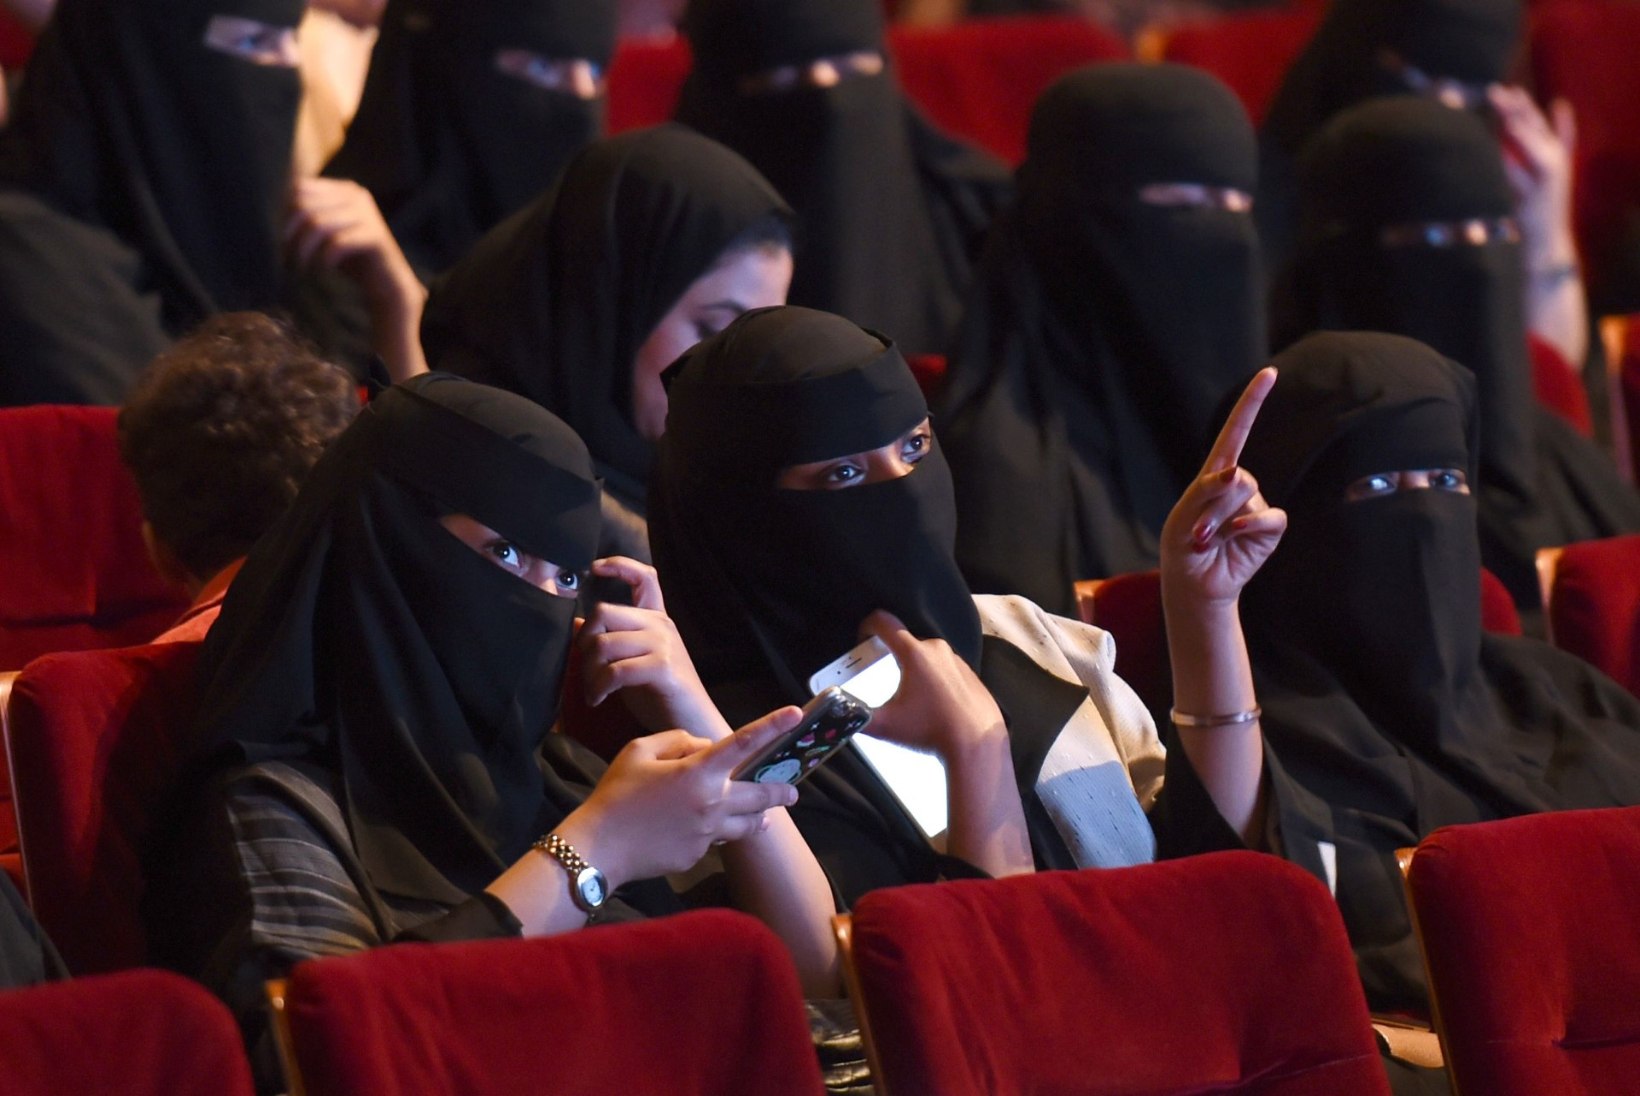 Uuendusmeelne Saudi Araabia avab jälle kinod